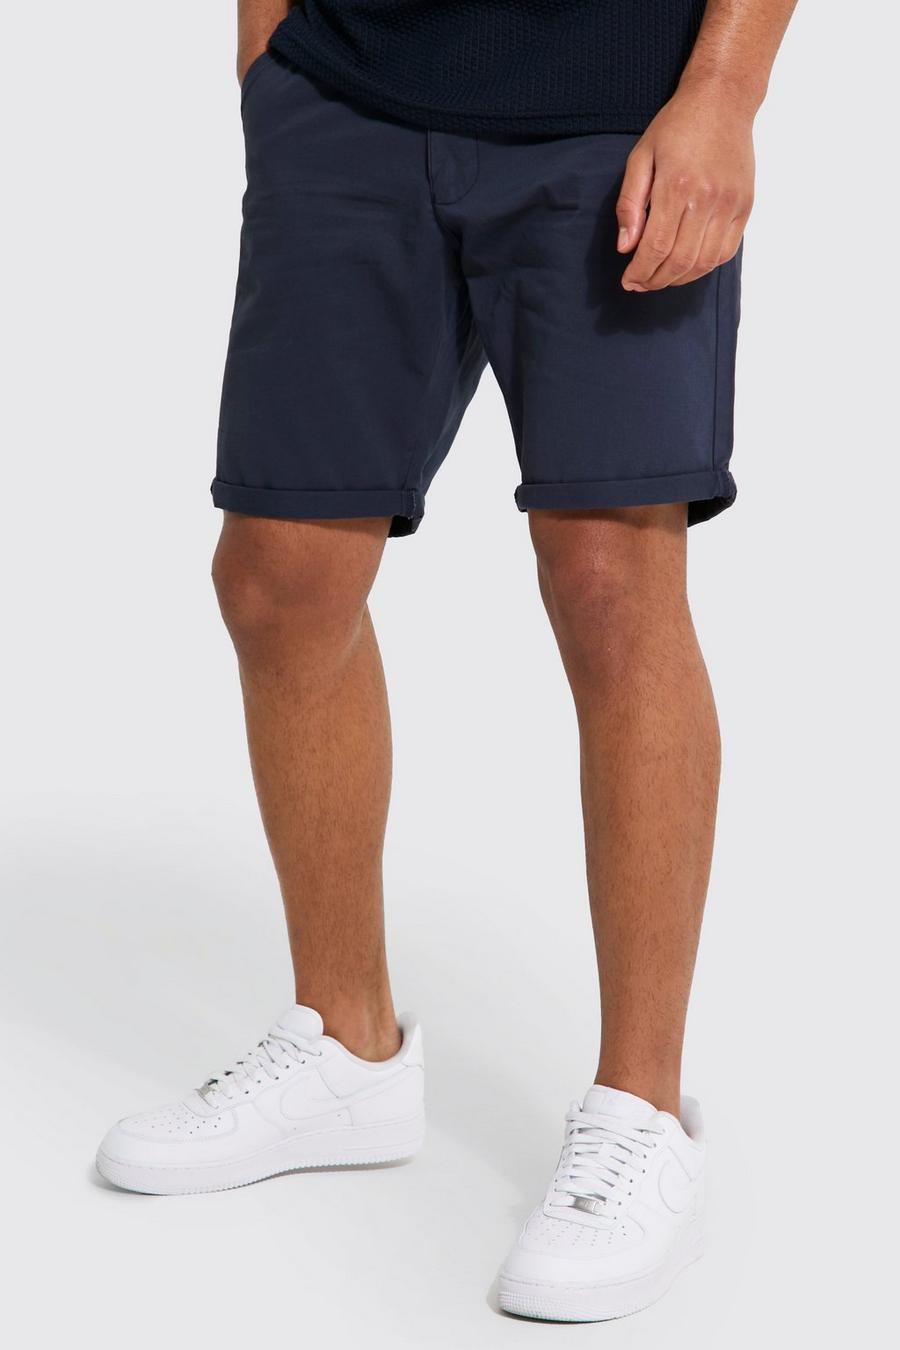 Pantalón corto Tall chino ajustado, Navy azul marino image number 1